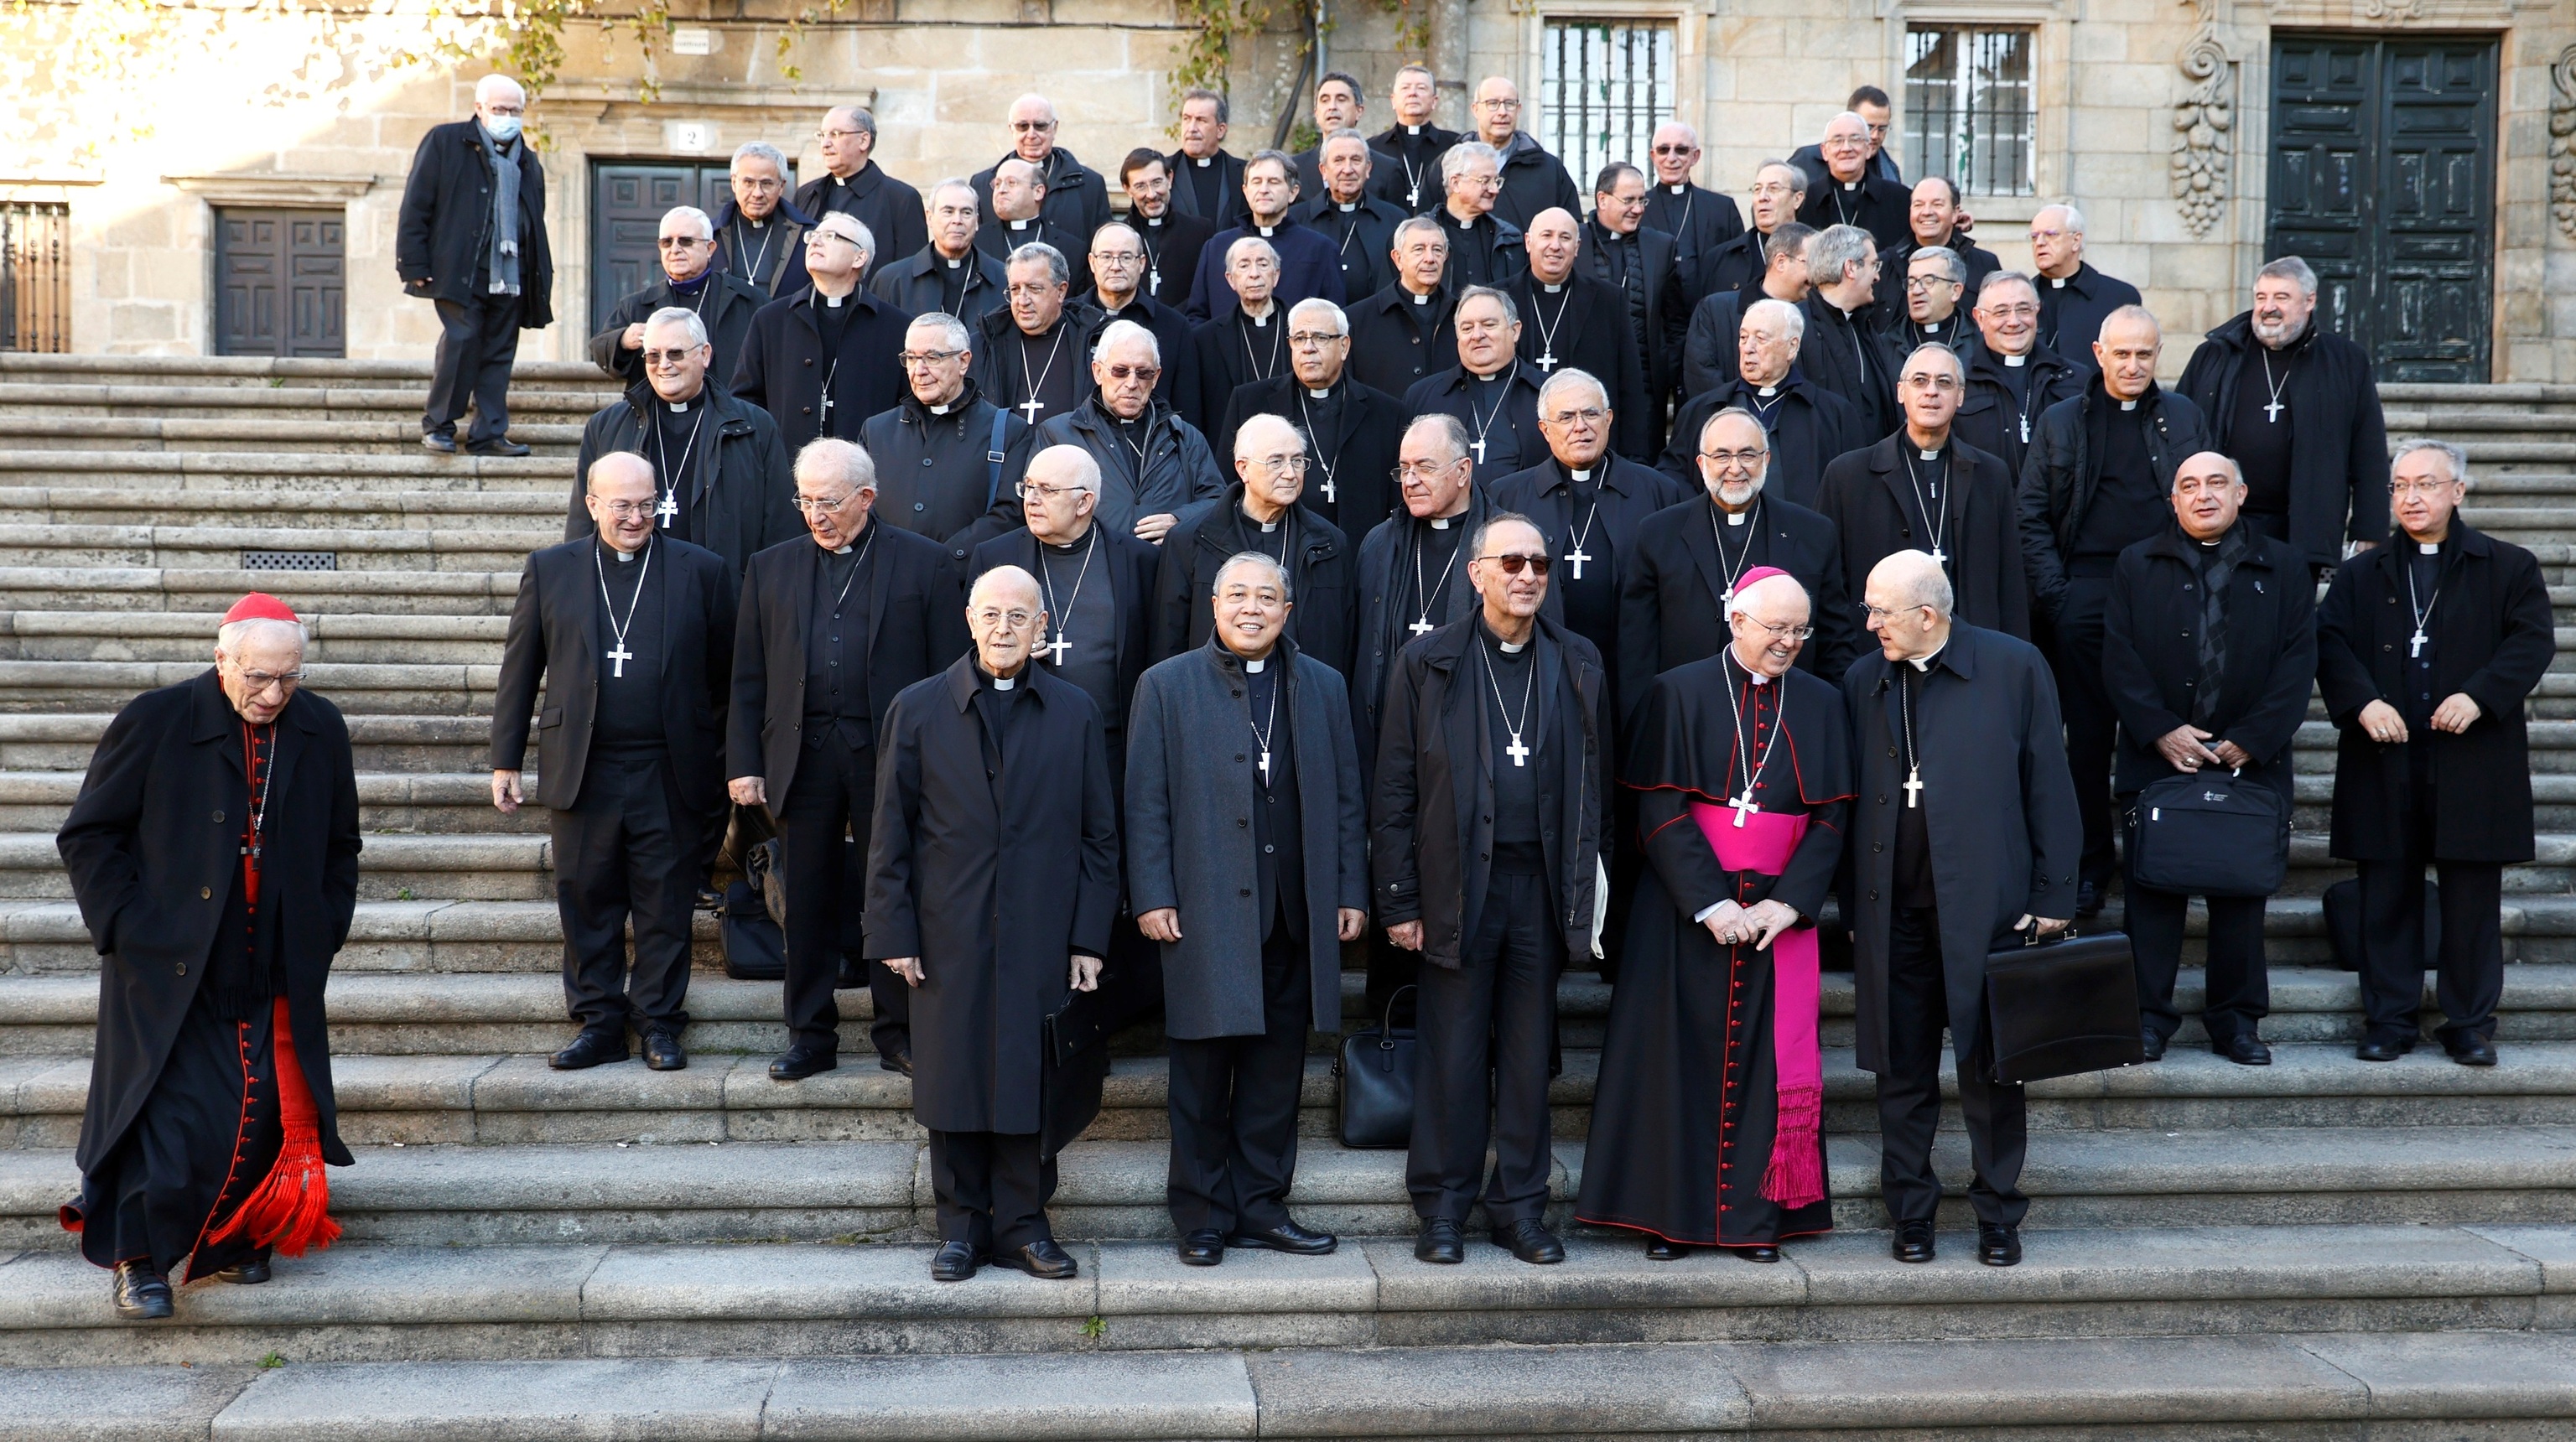 Los obispos españoles reaccionan ante los abusos a menores | España